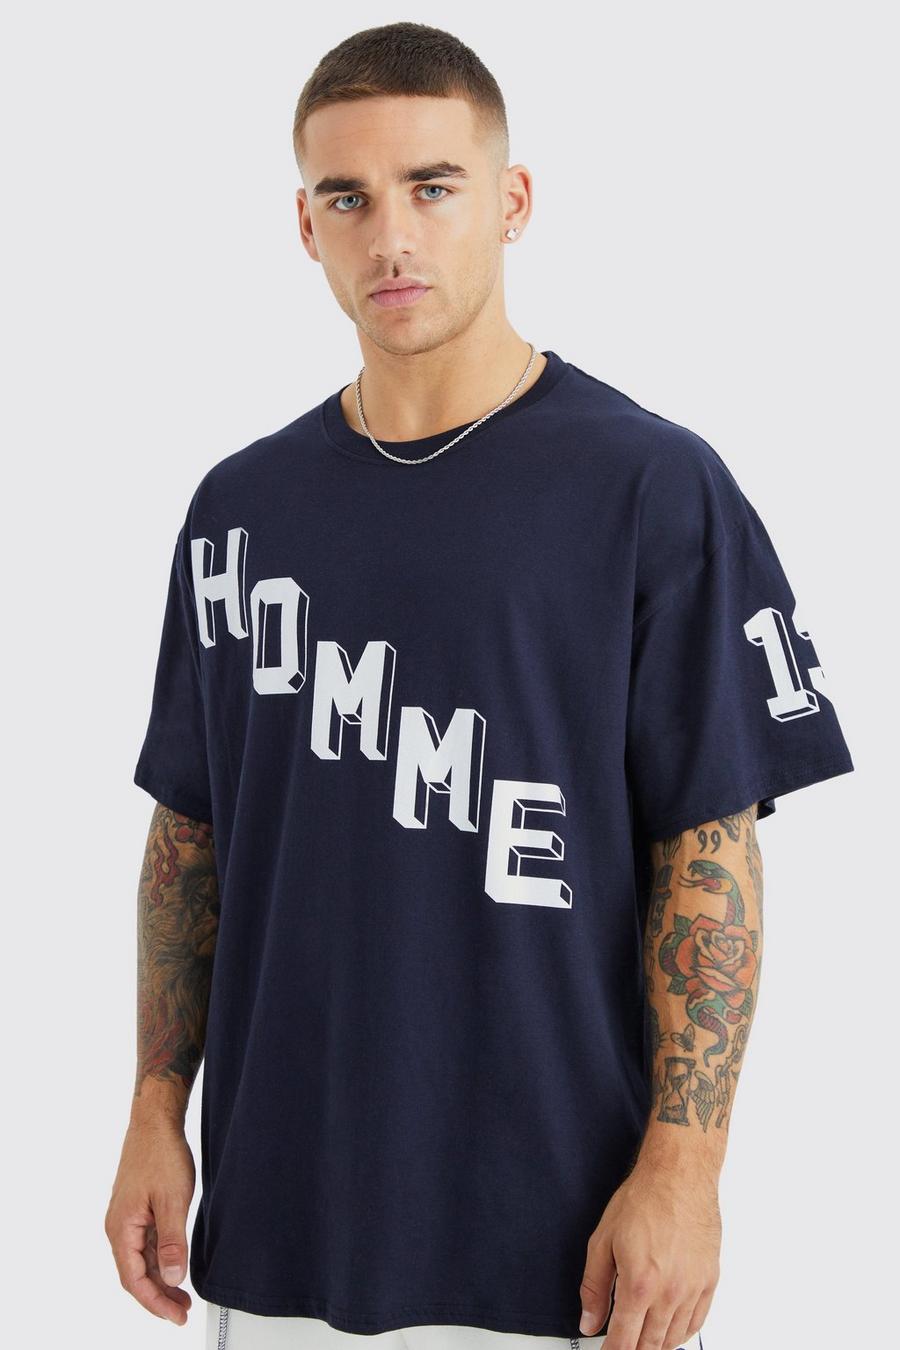 Navy marineblau Oversized Homme Graphic T-shirt